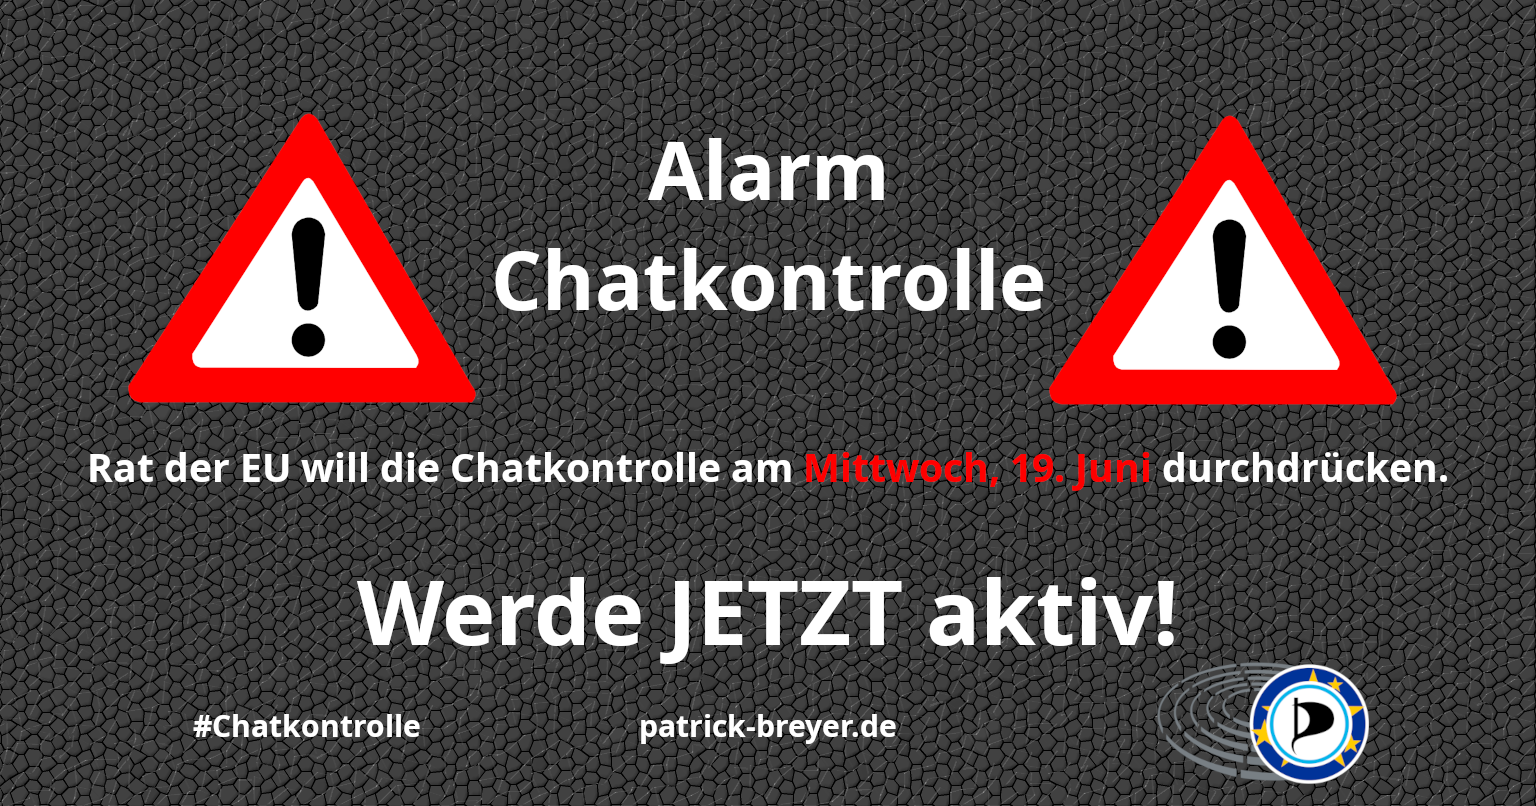 Alarmzeichen. Dazu der Text: „Alarm Chatkontrolle Rat der EU will die Chatkontrolle am Mittwoch, 19. Juni durchdrücken. Werde JETZT aktiv! #chatkontrolle patrick-breyer.de" Und das Logo der Europäischen Piratenpartei